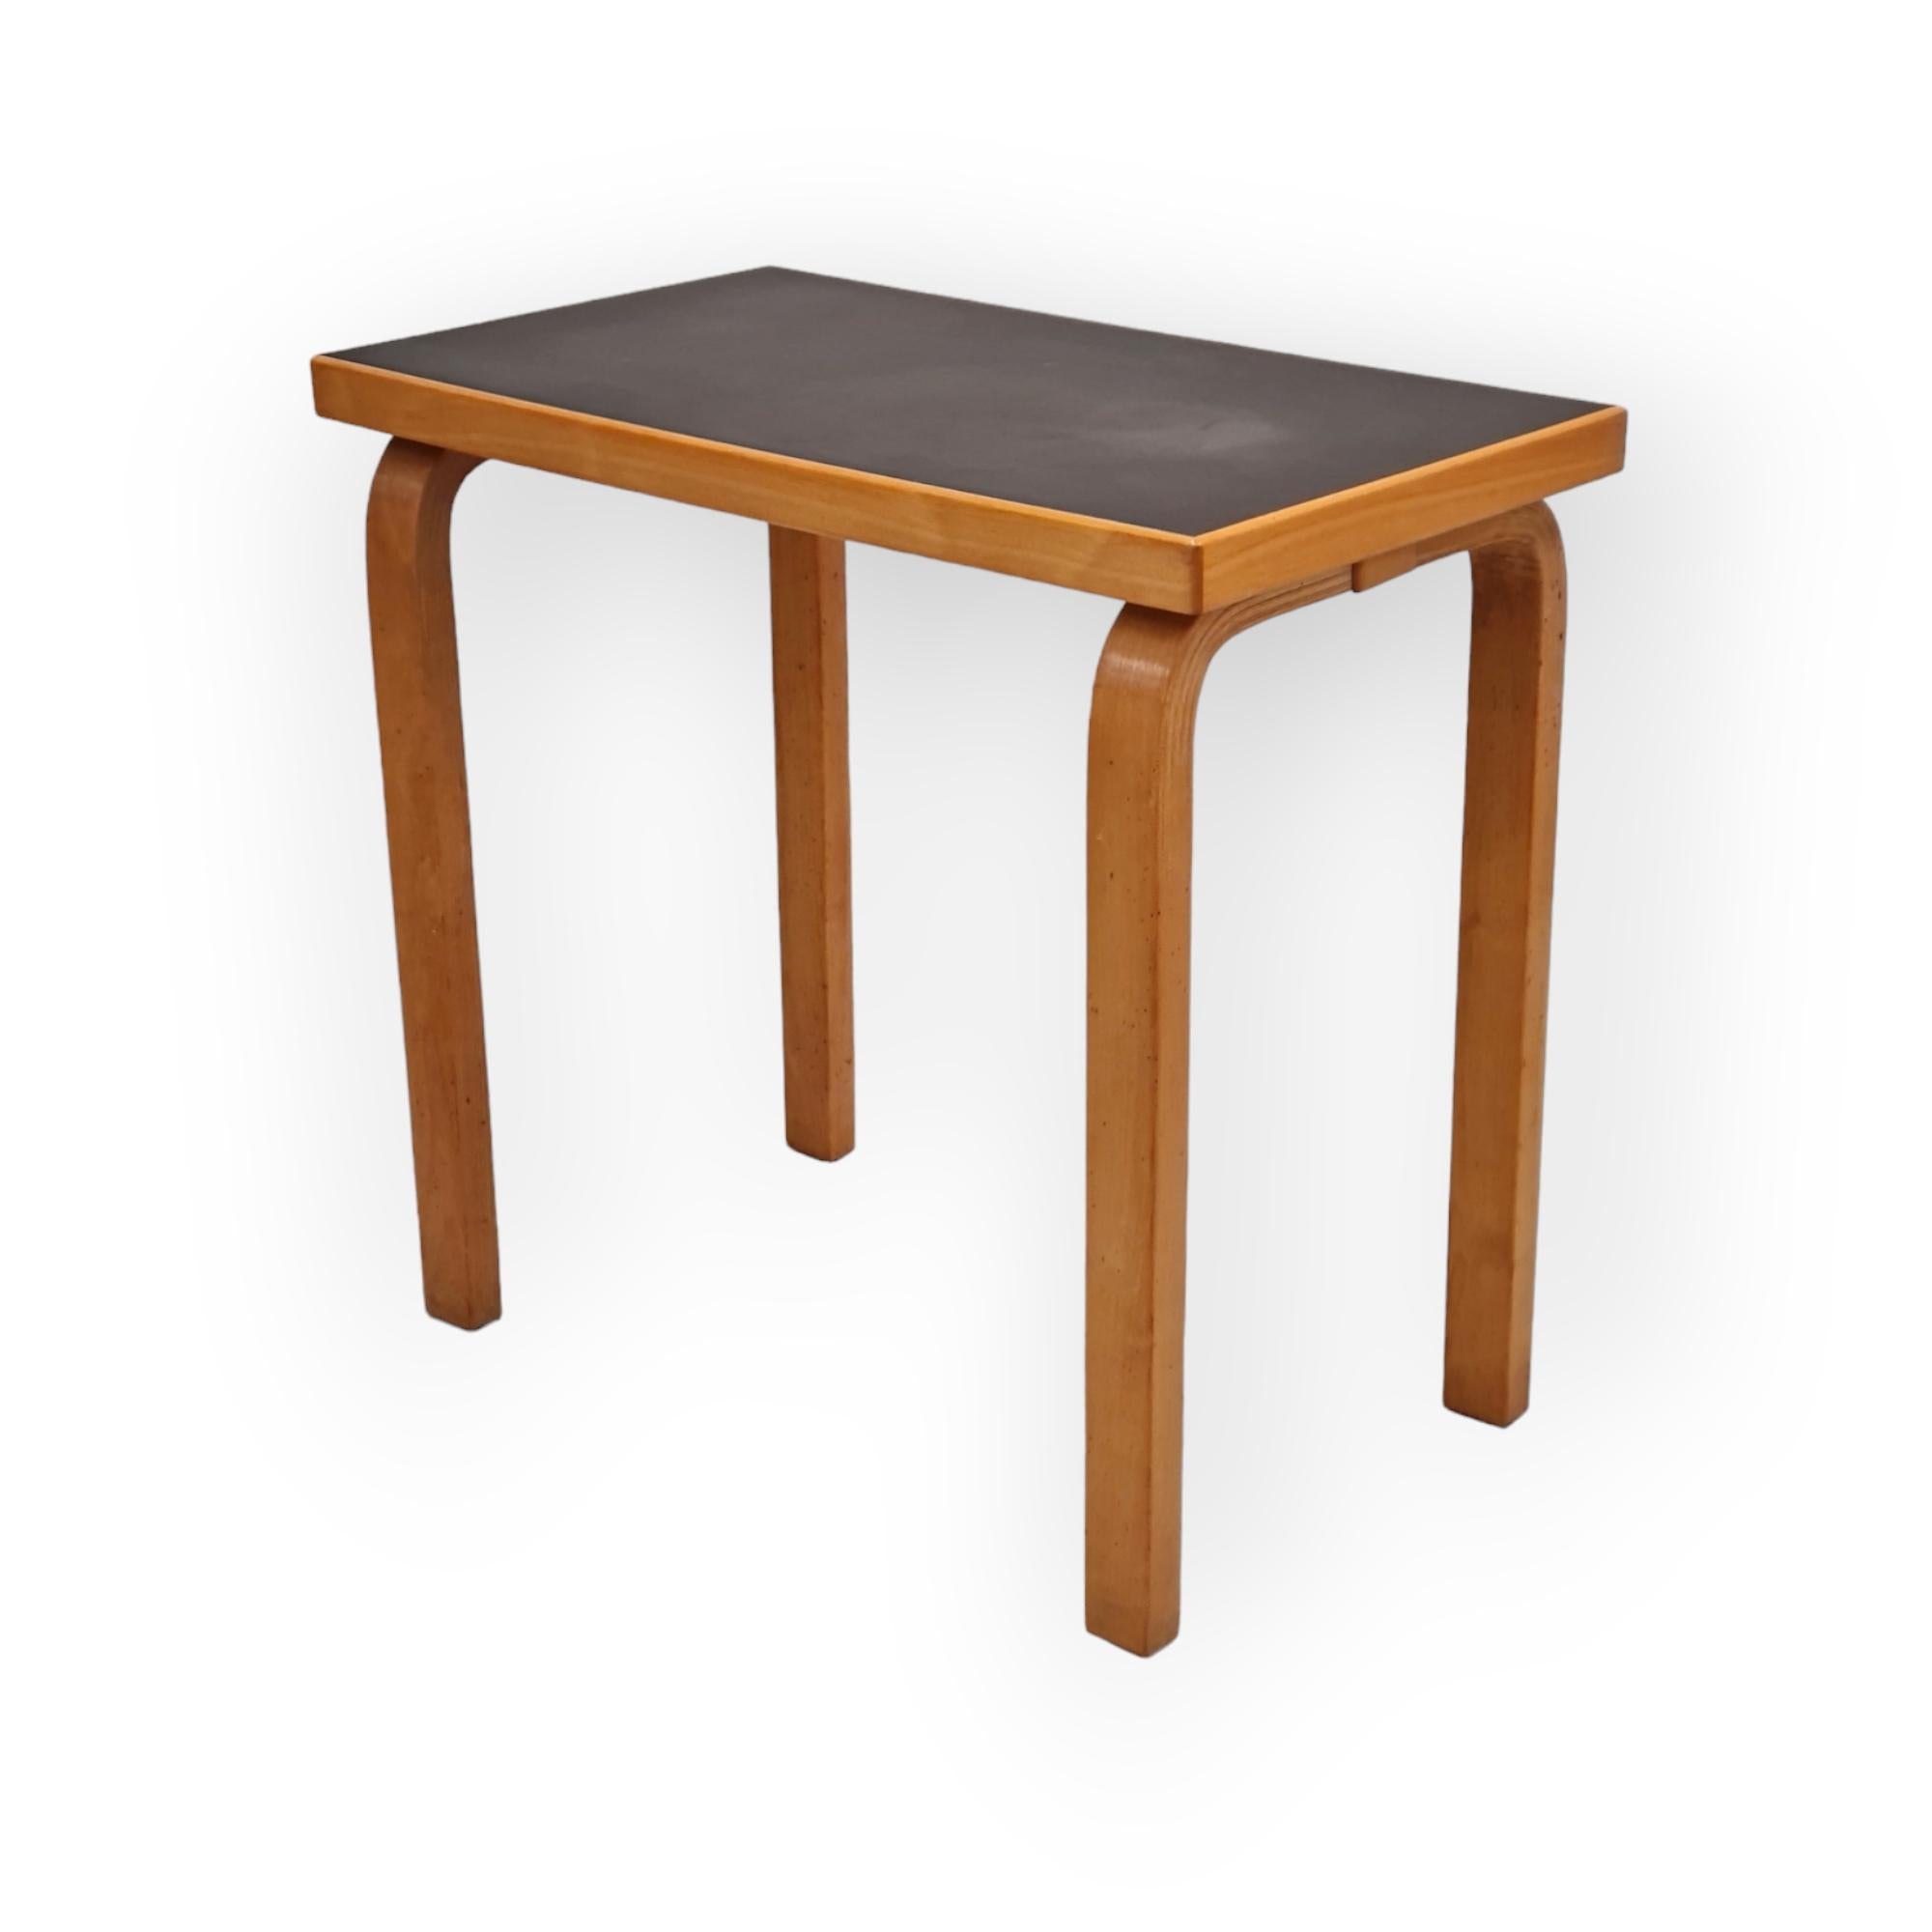 Cette table d'appoint de petite taille peut être utilisée dans n'importe quelle pièce, et à des fins diverses. Elle est parfaite comme table d'appoint pour un fauteuil ou un espace de lecture. La patine des pieds, couleur miel vintage, combinée à la